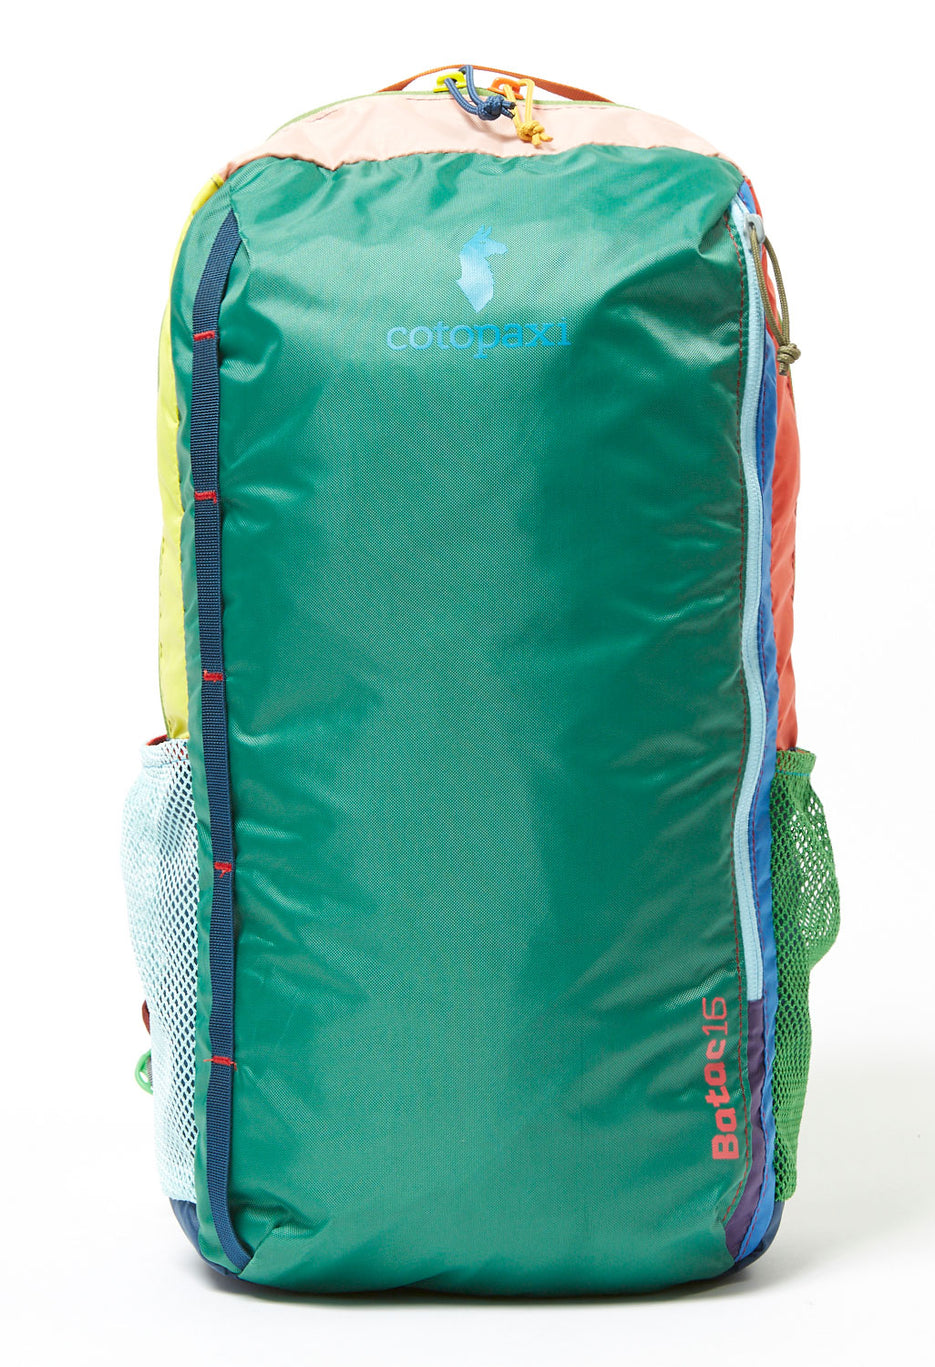 Cotopaxi Batac 16L Backpack 0